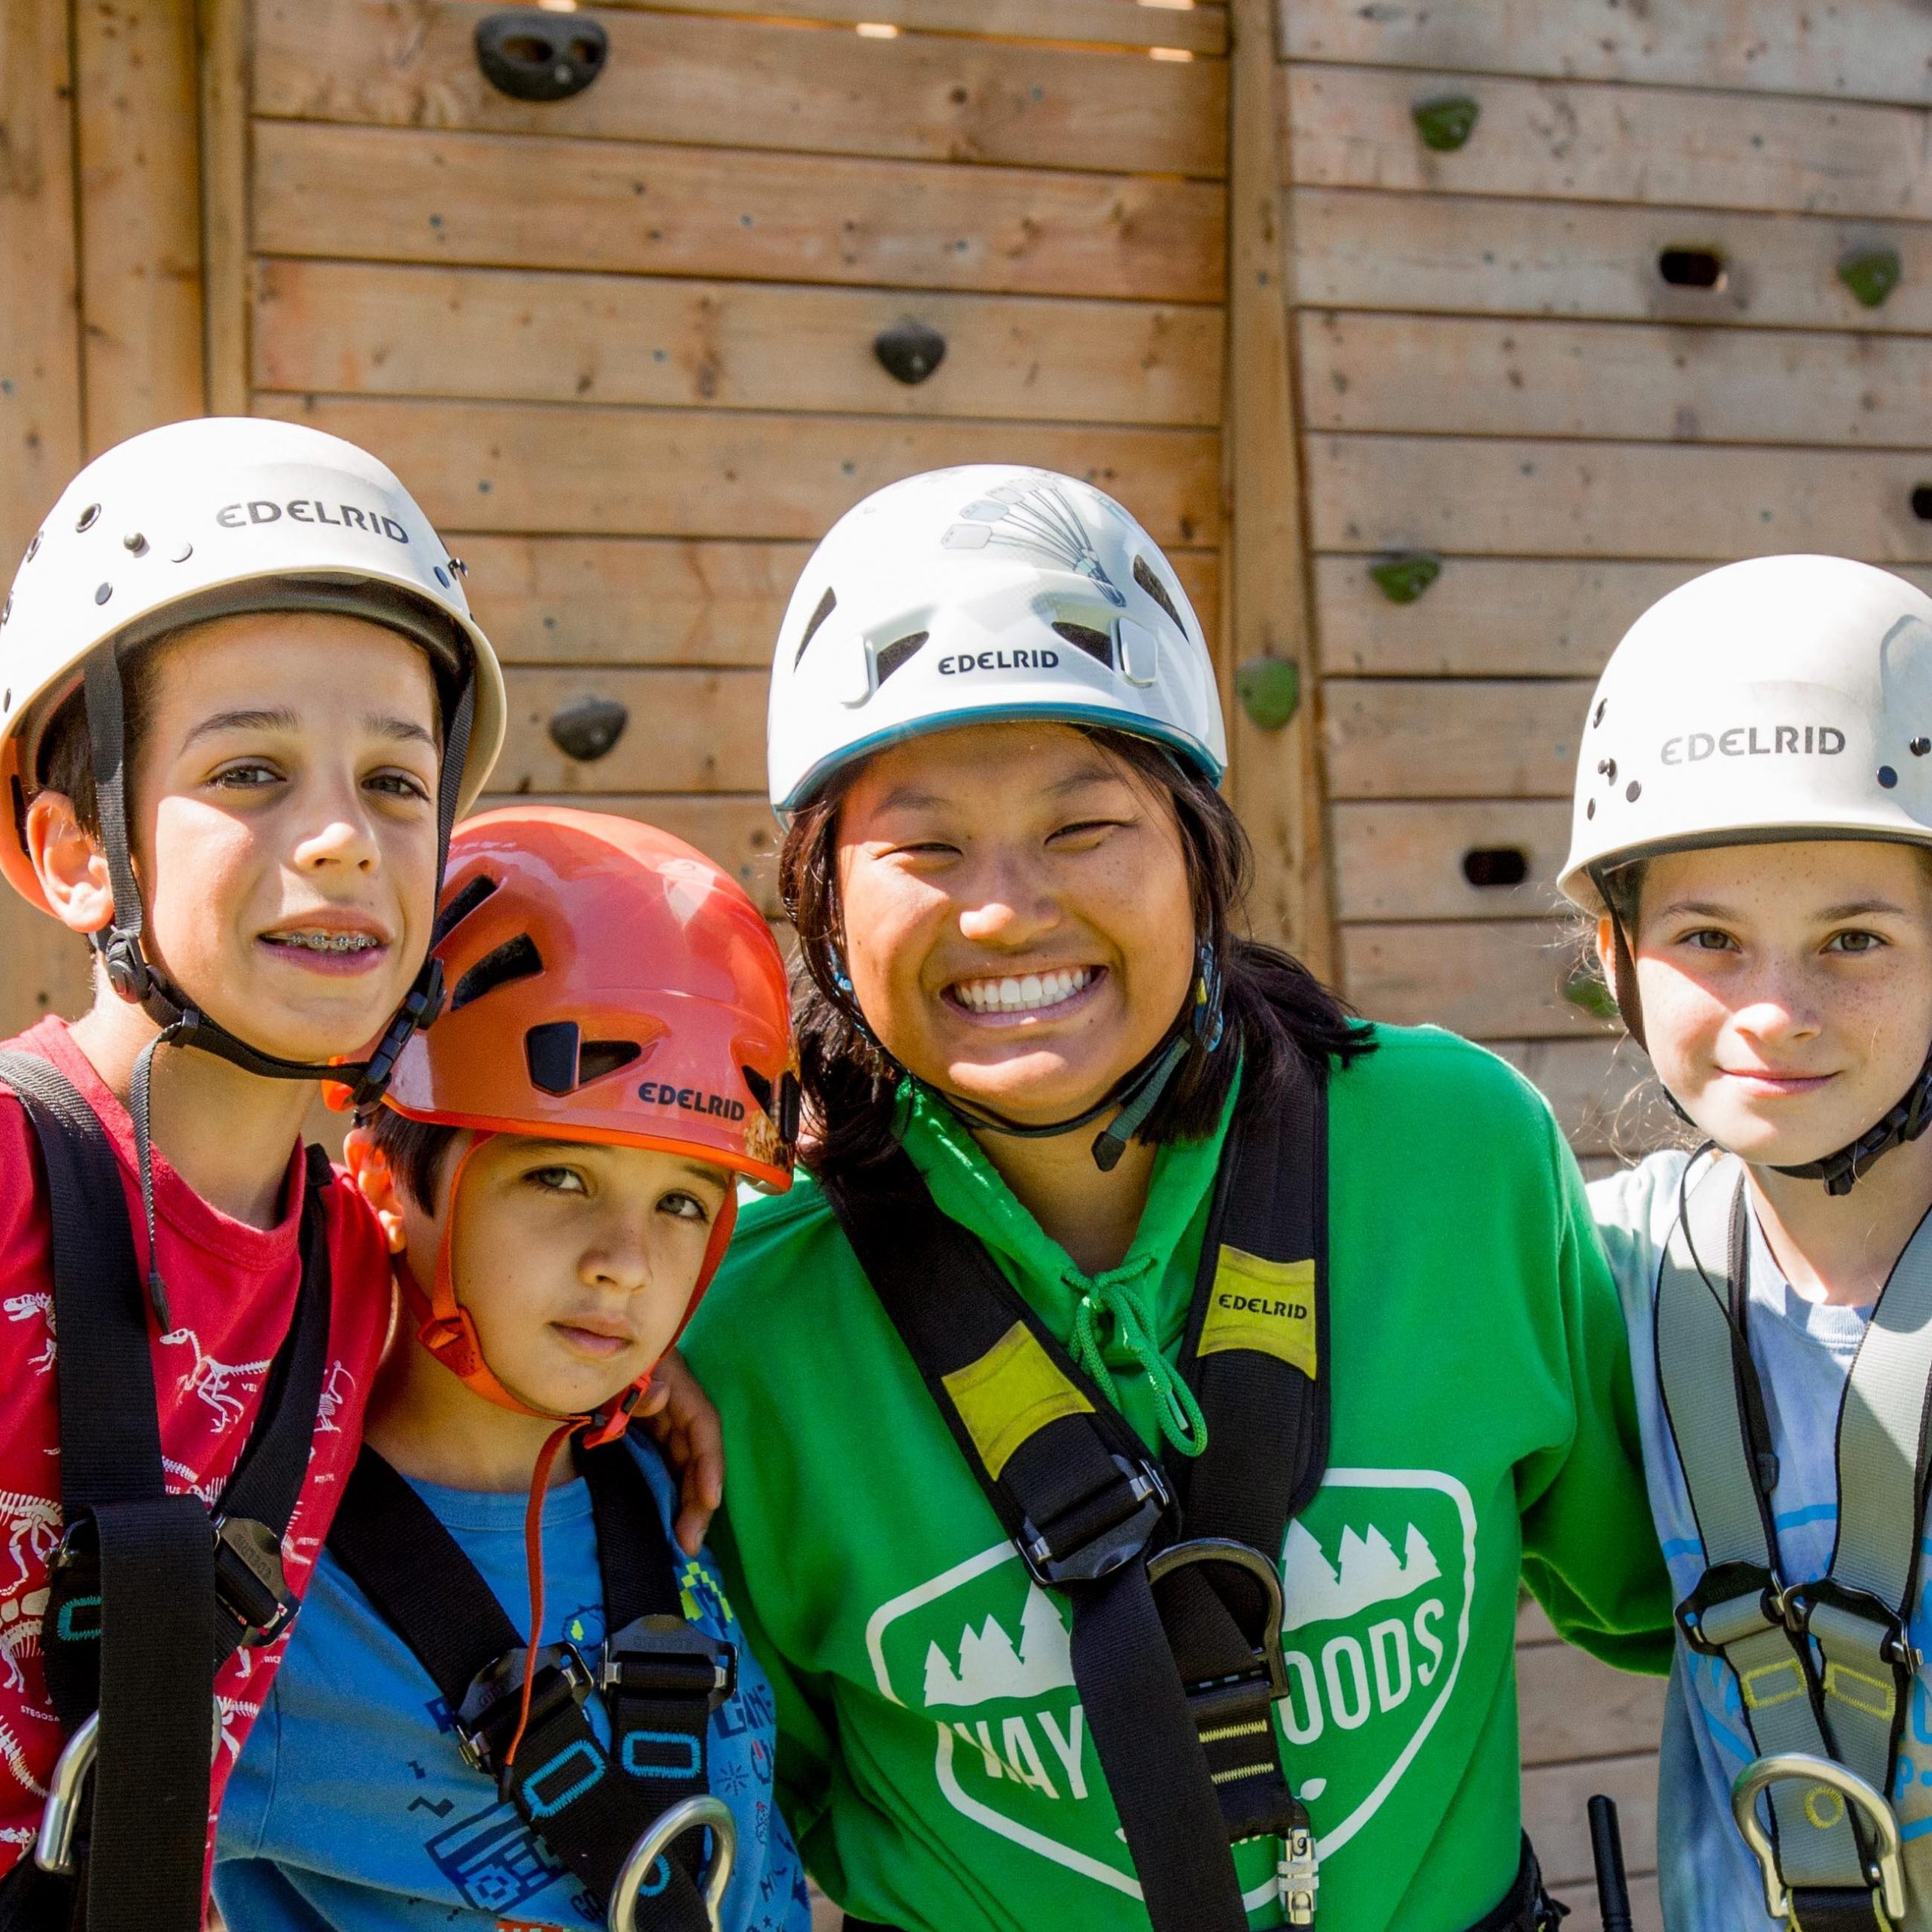 cuatro niños sonríen para la cámara mientras llevan arneses y cascos de escalada